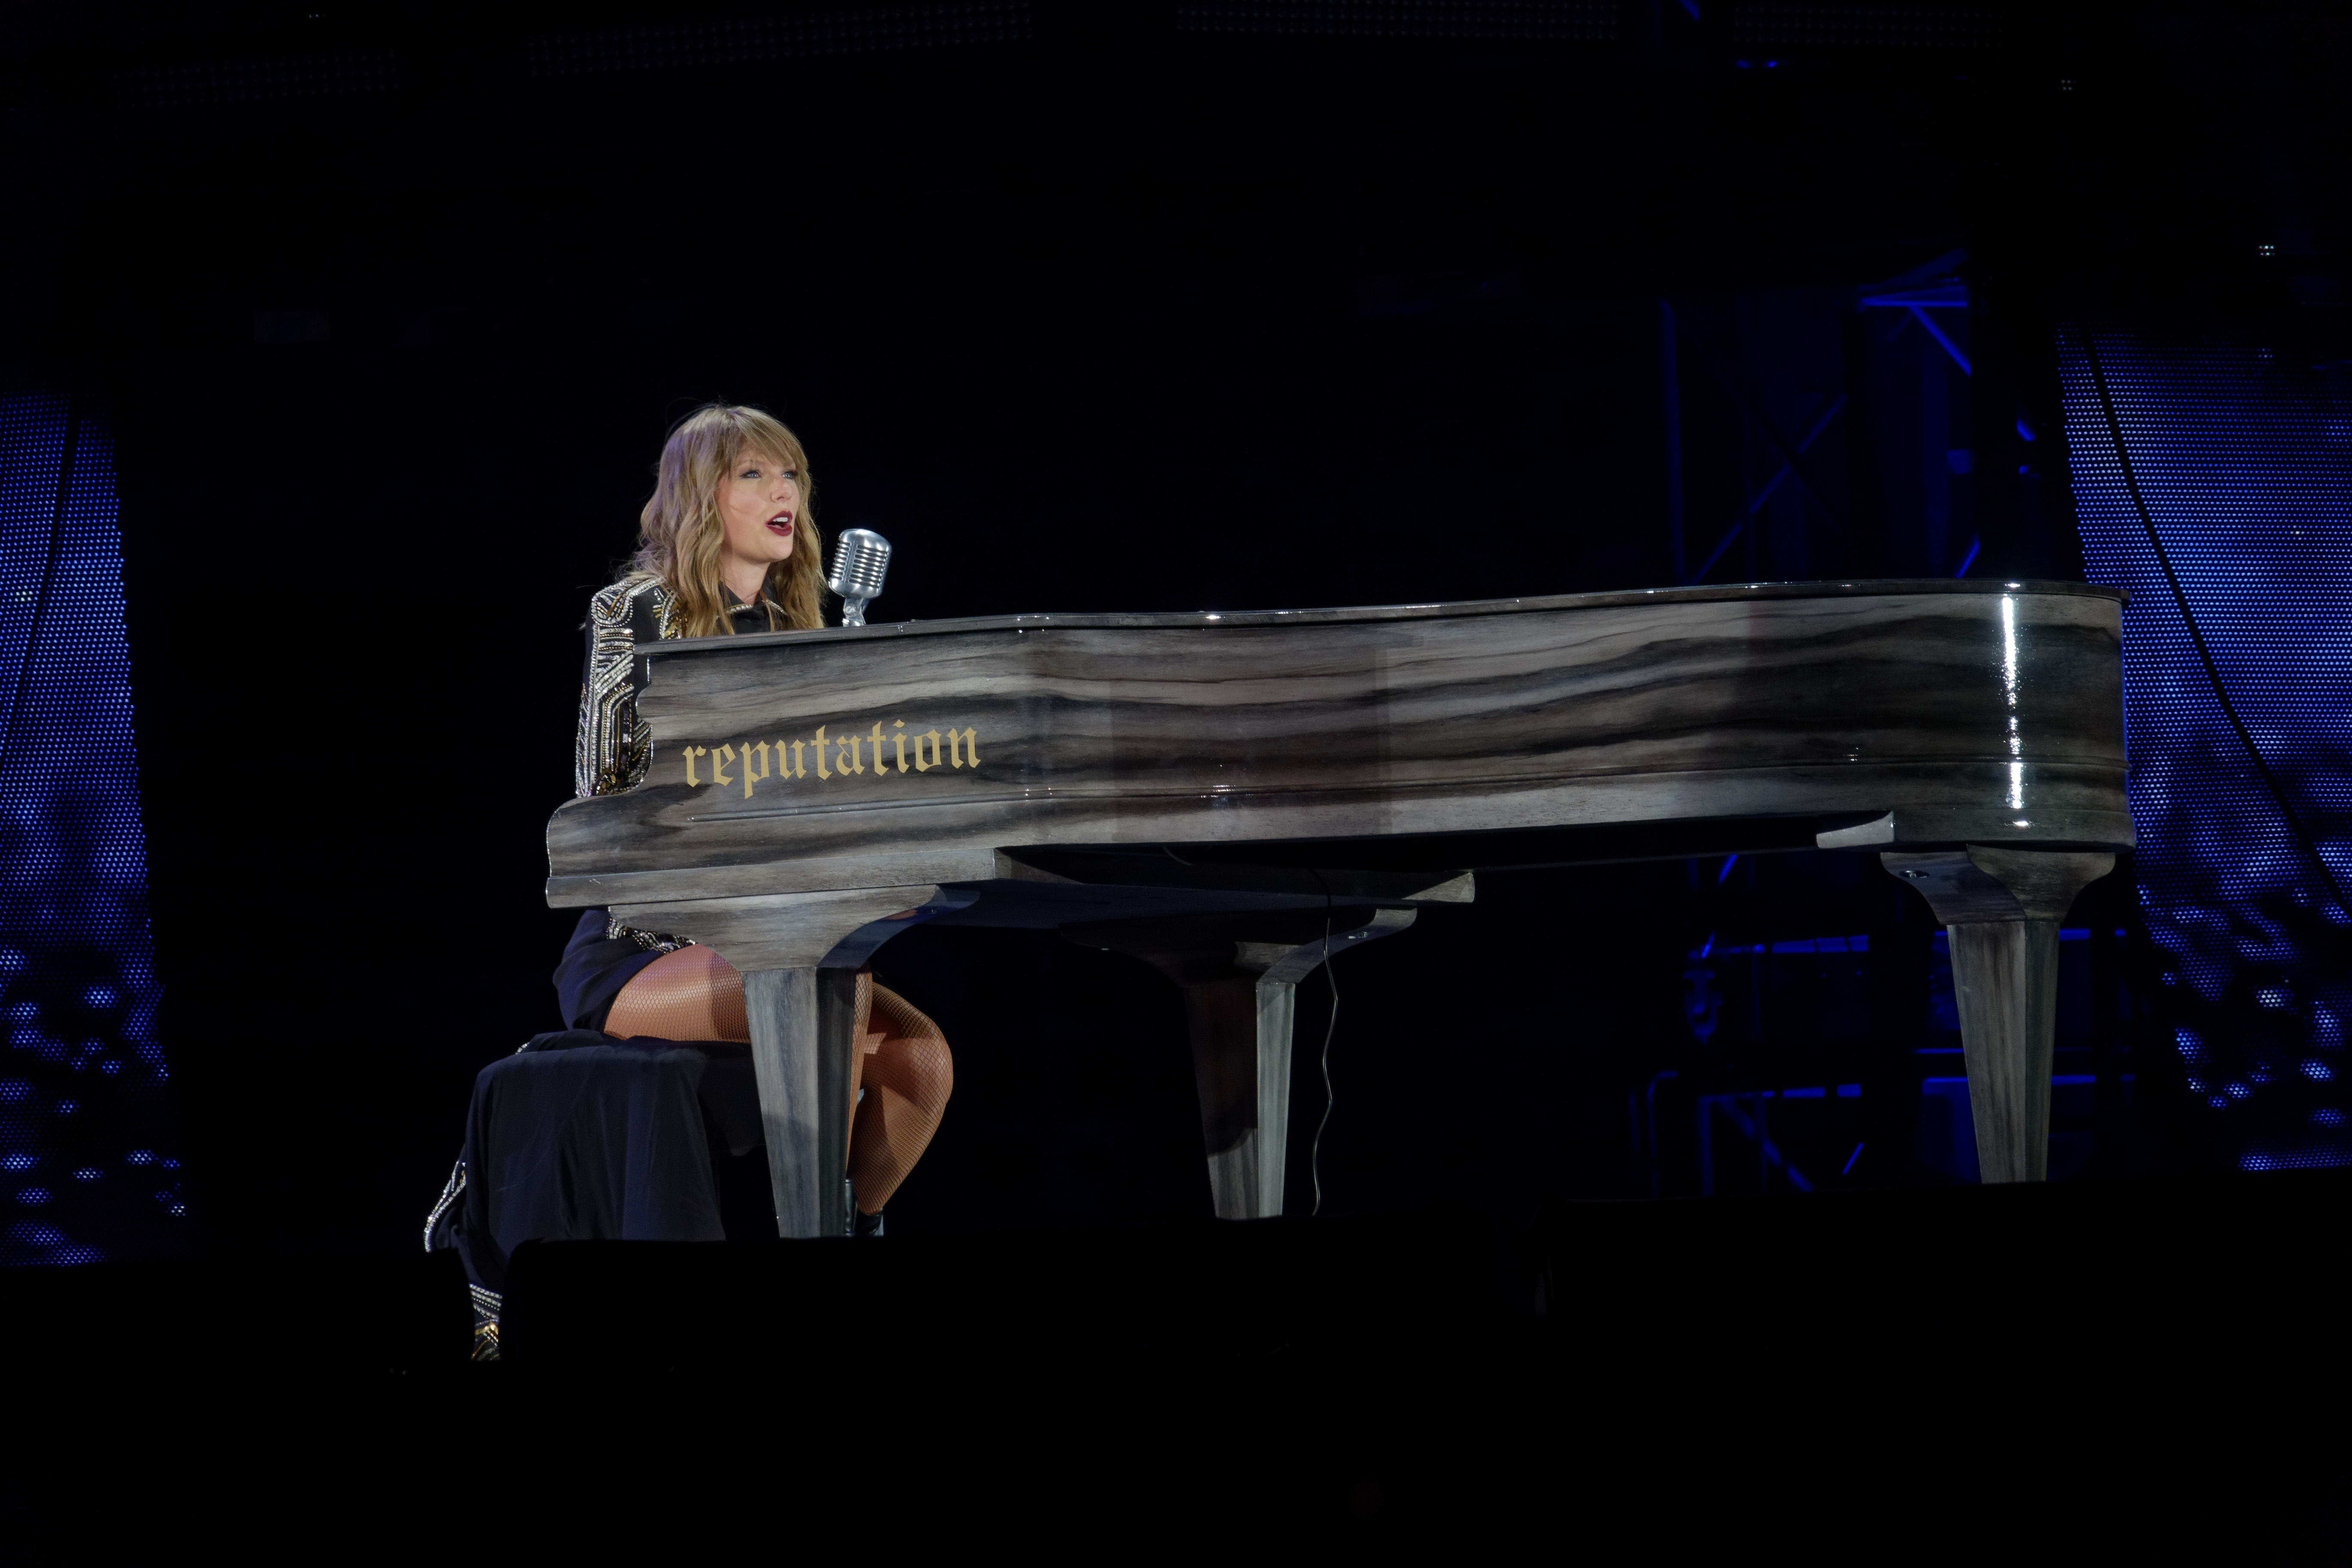 File:Taylor Swift - Reputation Tour Seattle - Dress (cropped).jpg -  Wikipedia